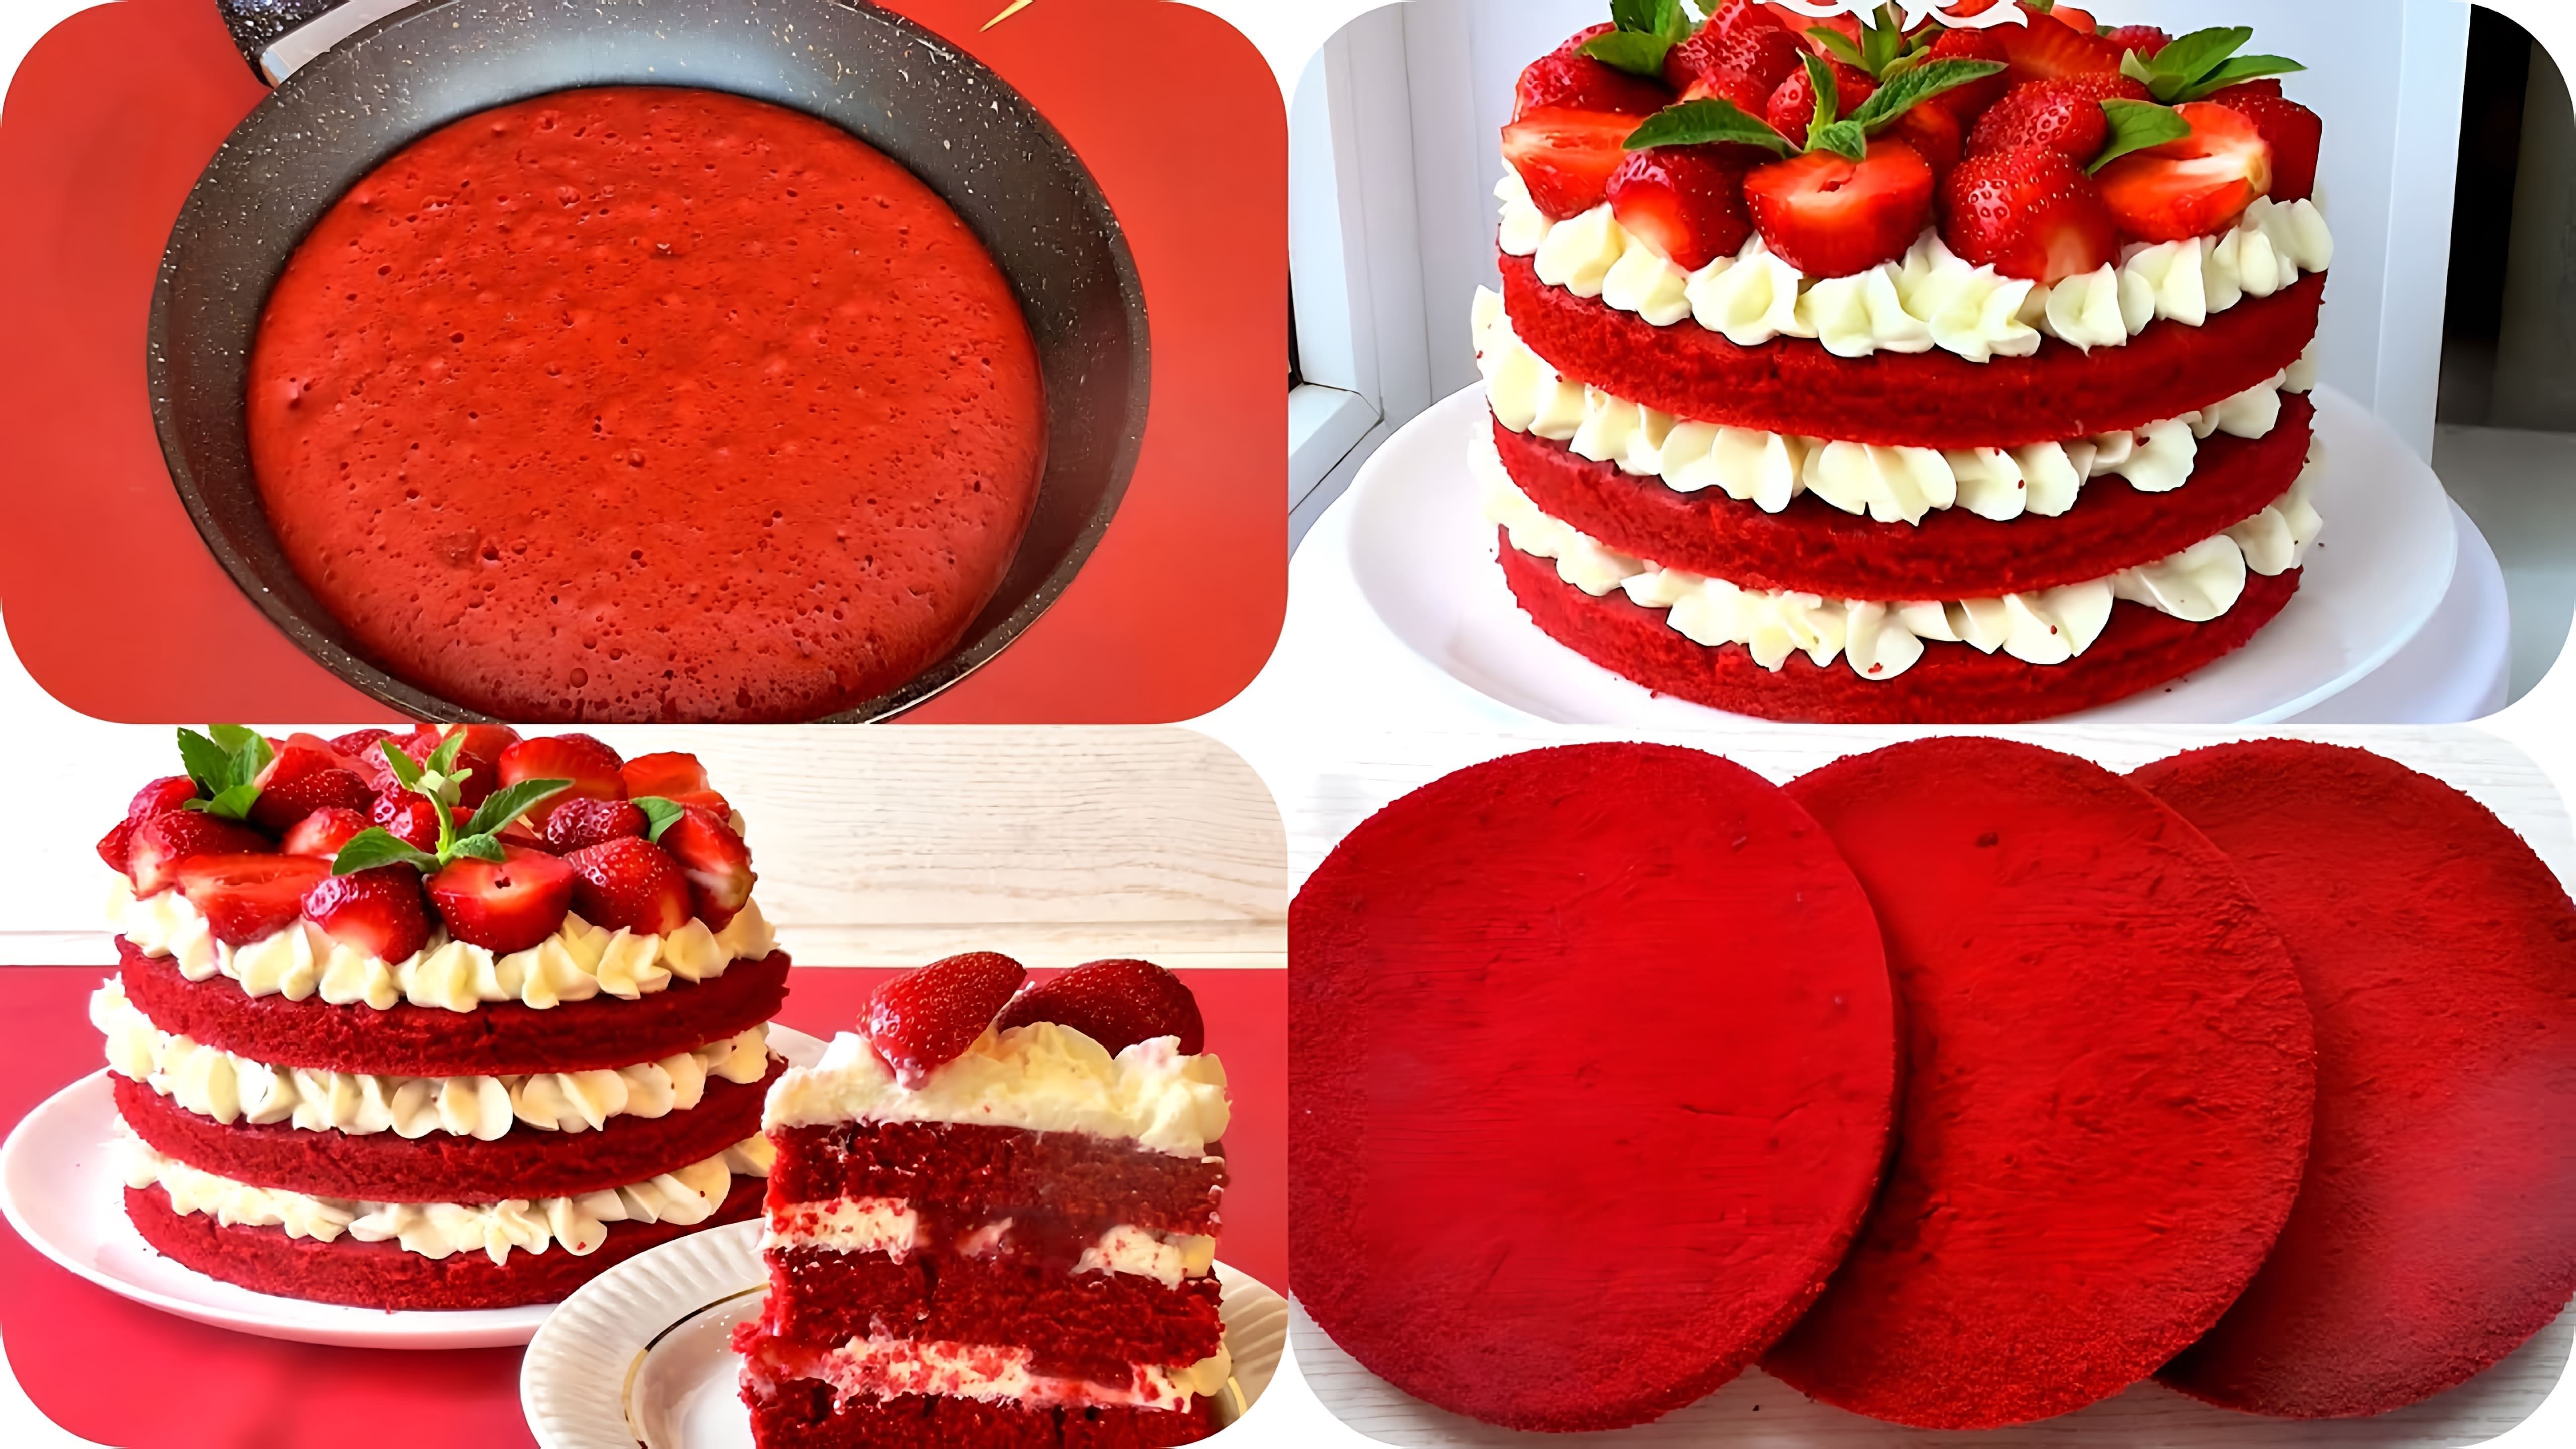 В этом видео демонстрируется рецепт приготовления торта "Красный бархат" на сковороде